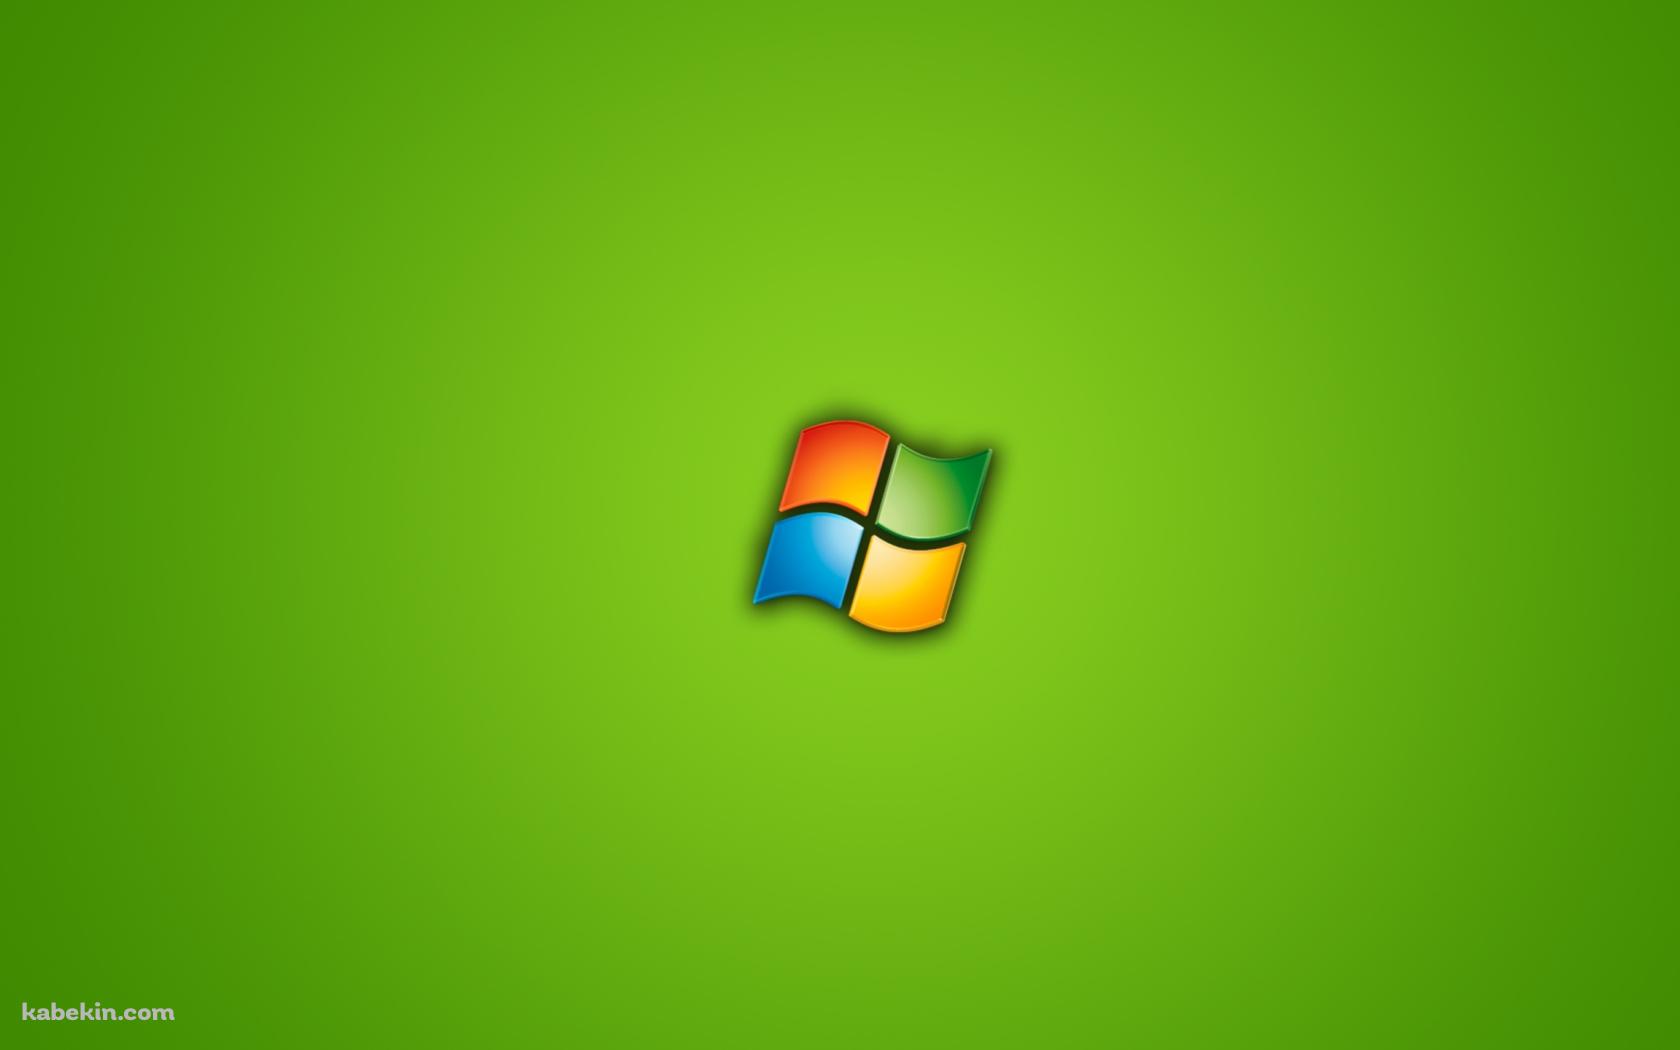 ウィンドウズ Windows ロゴの壁紙(1680px x 1050px) 高画質 PC・デスクトップ用